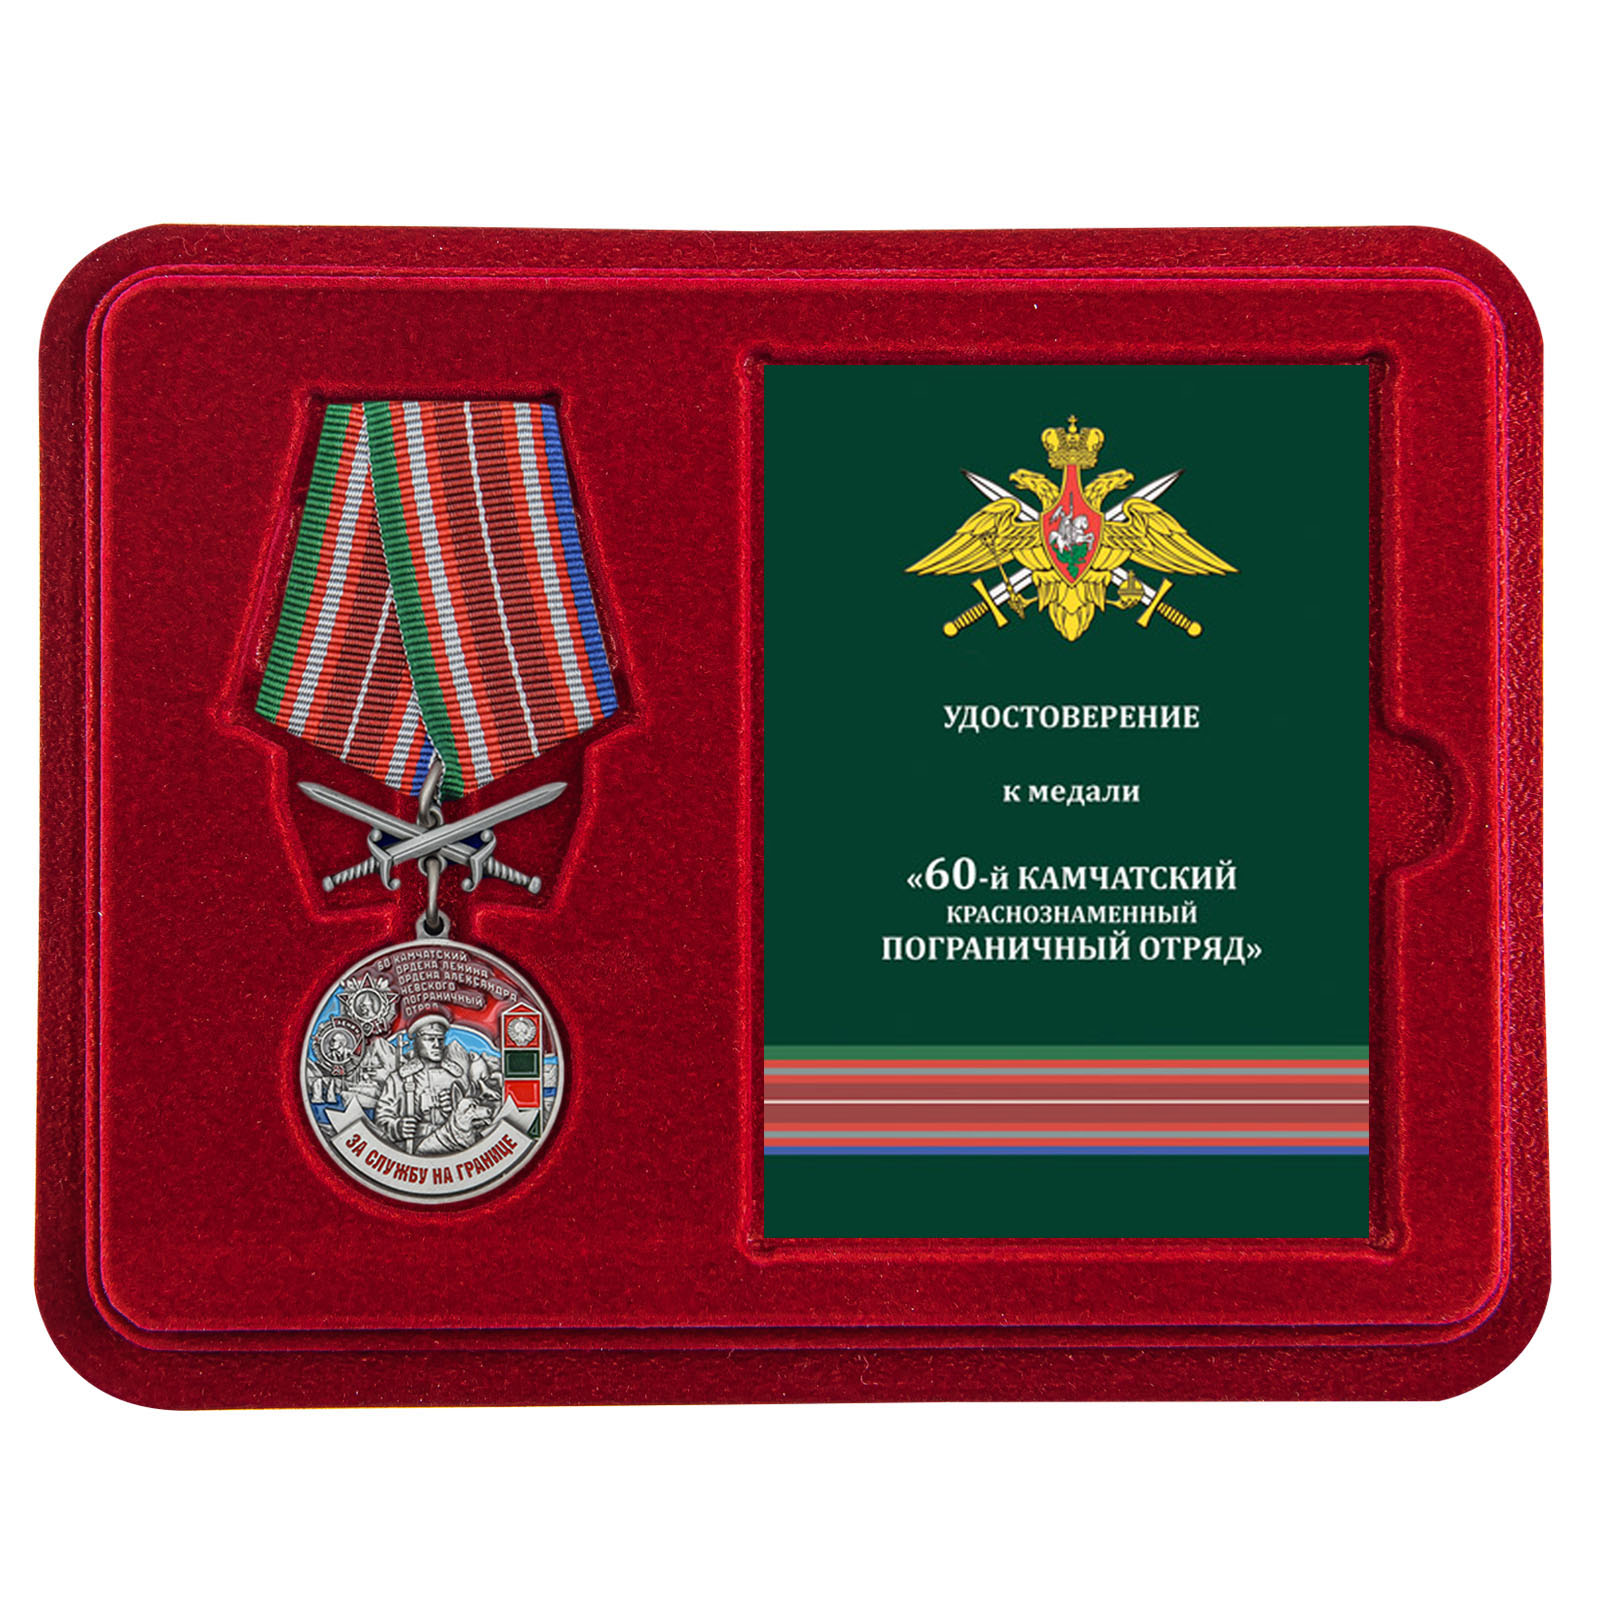 Купить медаль За службу в Камчатском пограничном отряде с доставкой